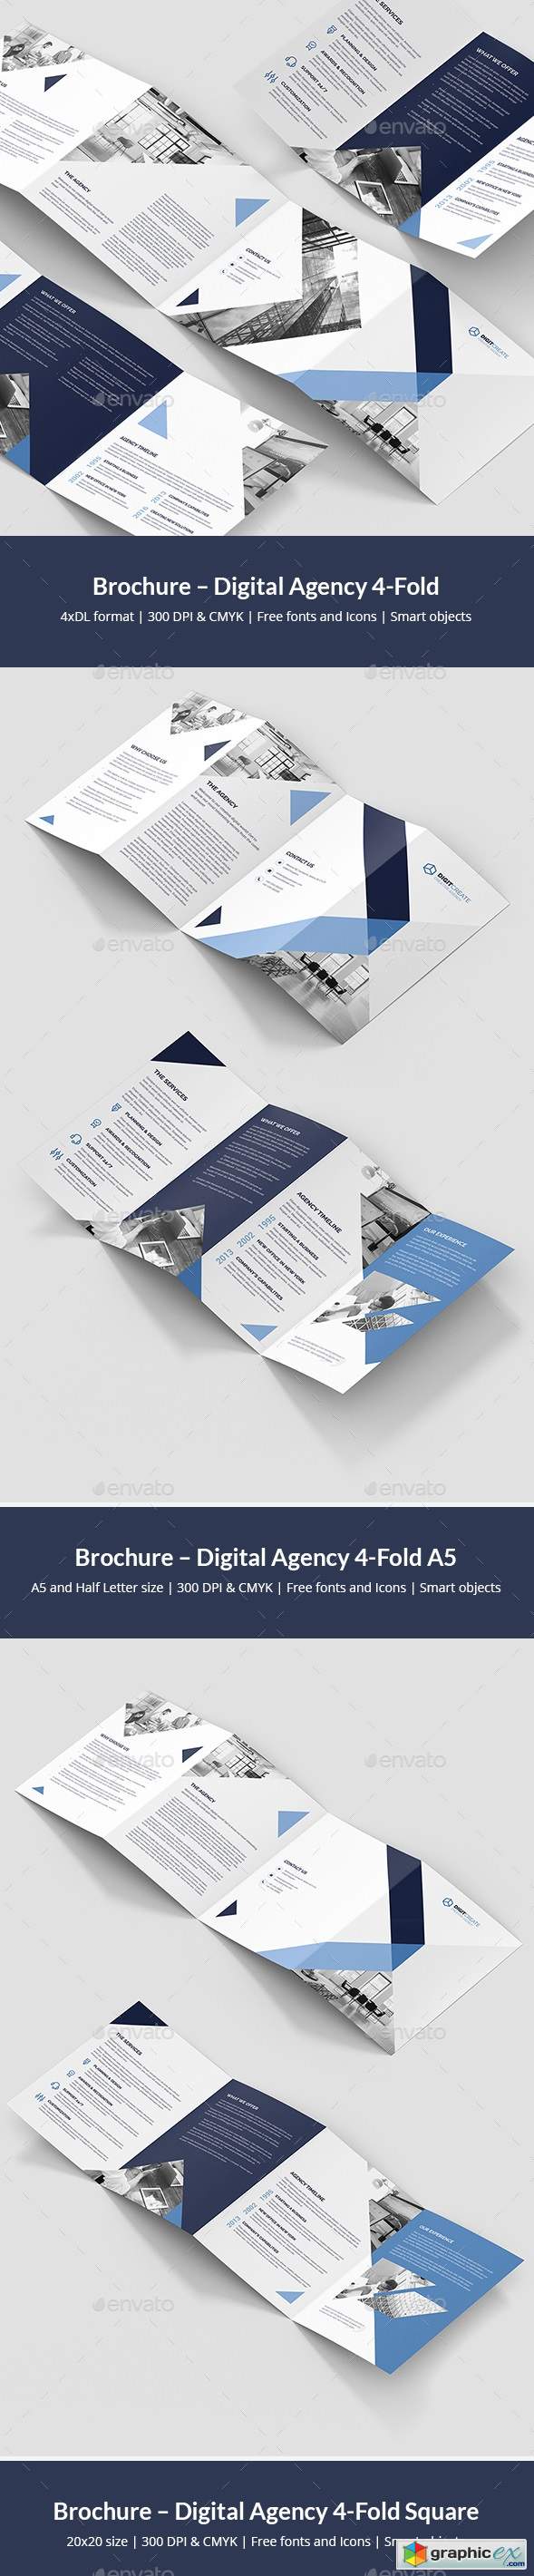 Digital Agency – Brochures Bundle Print Templates 10 in 1